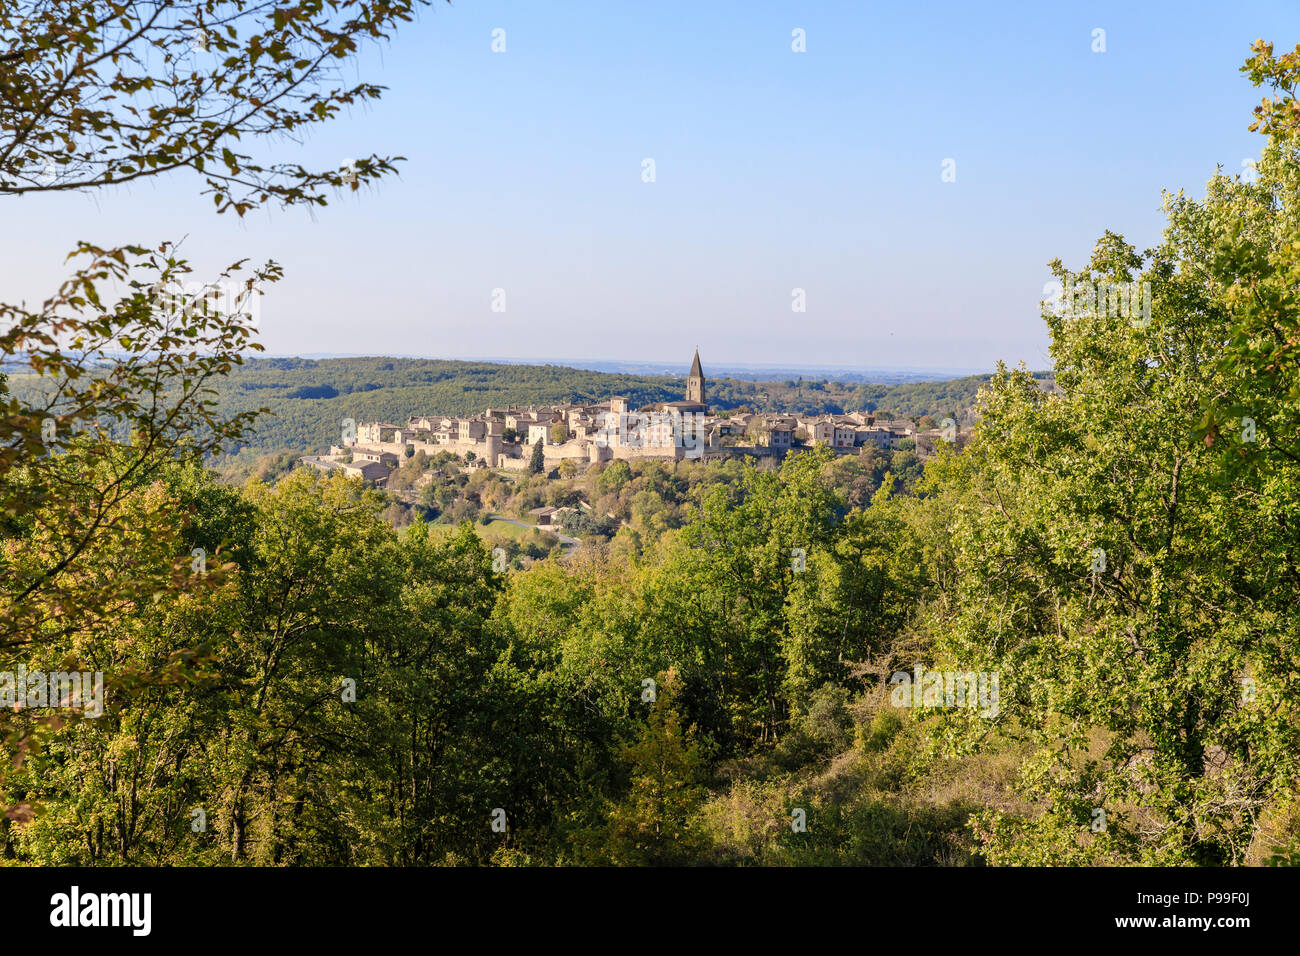 Francia, Tarn, Puycelsi, etichettati Les Plus Beaux Villages de France (i più bei villaggi di Francia), vista generale del borgo fortificato // F Foto Stock